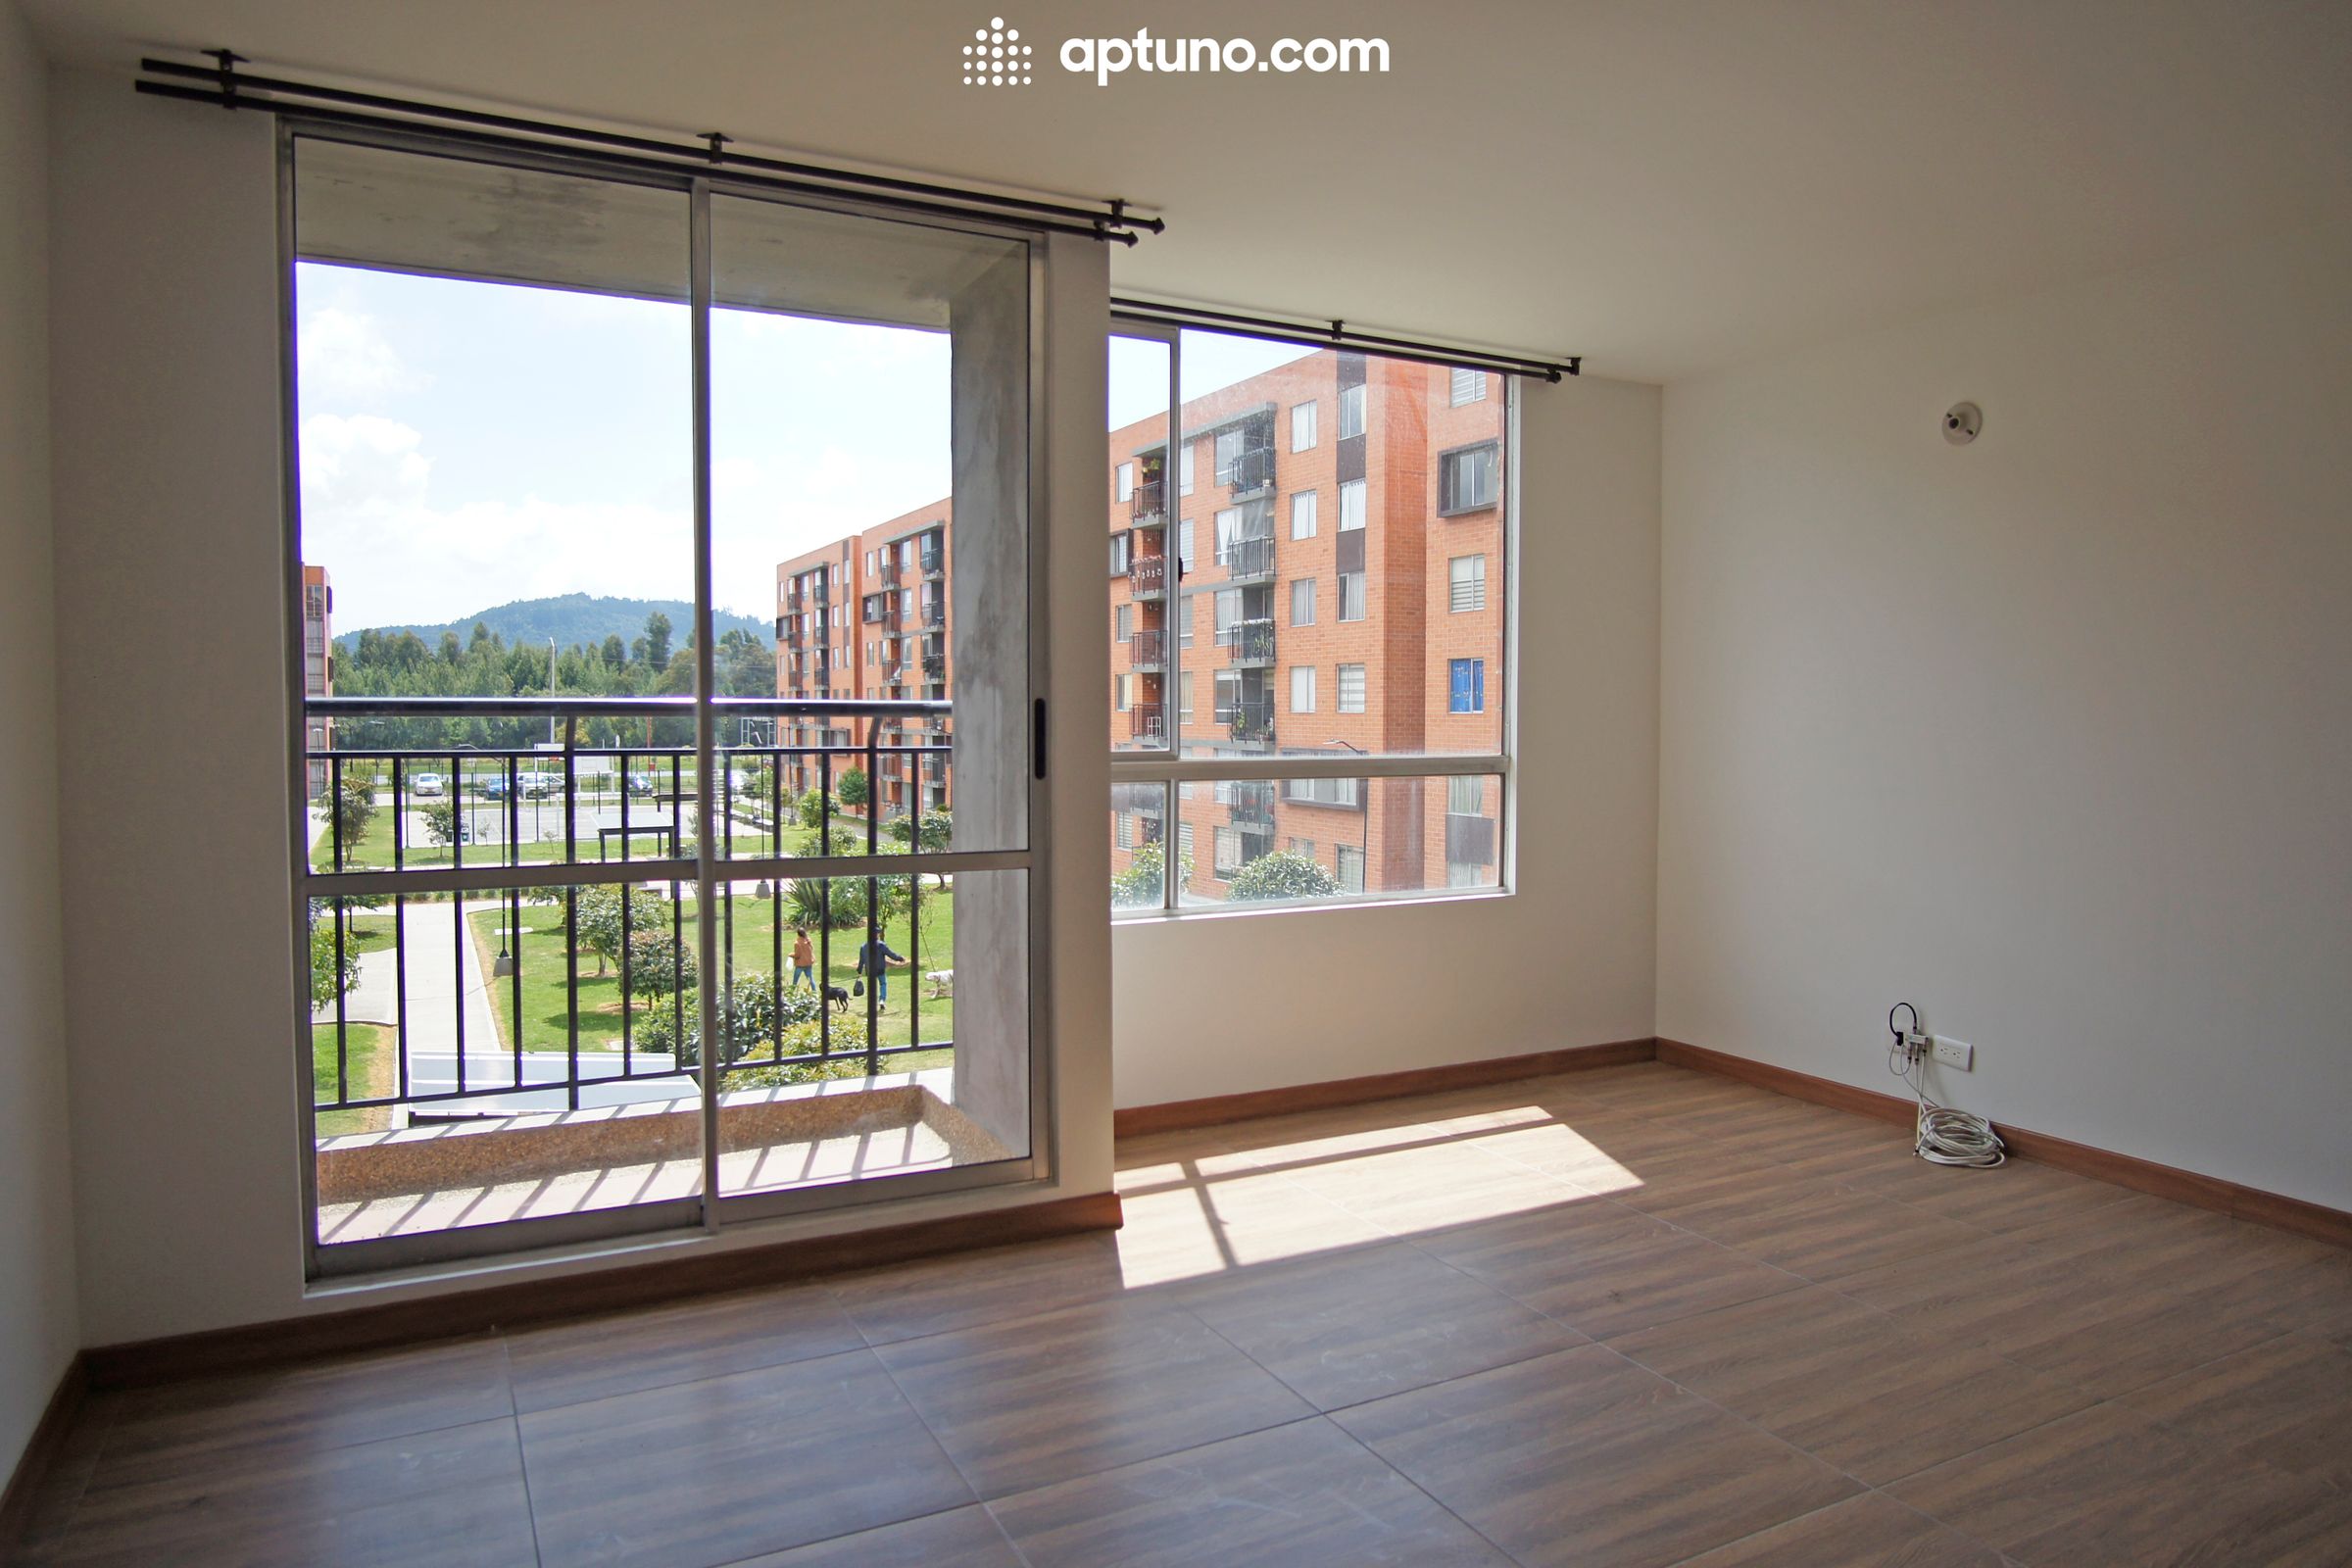 Apartamento en arriendo Madrid 65 m² - $ 900.000,00